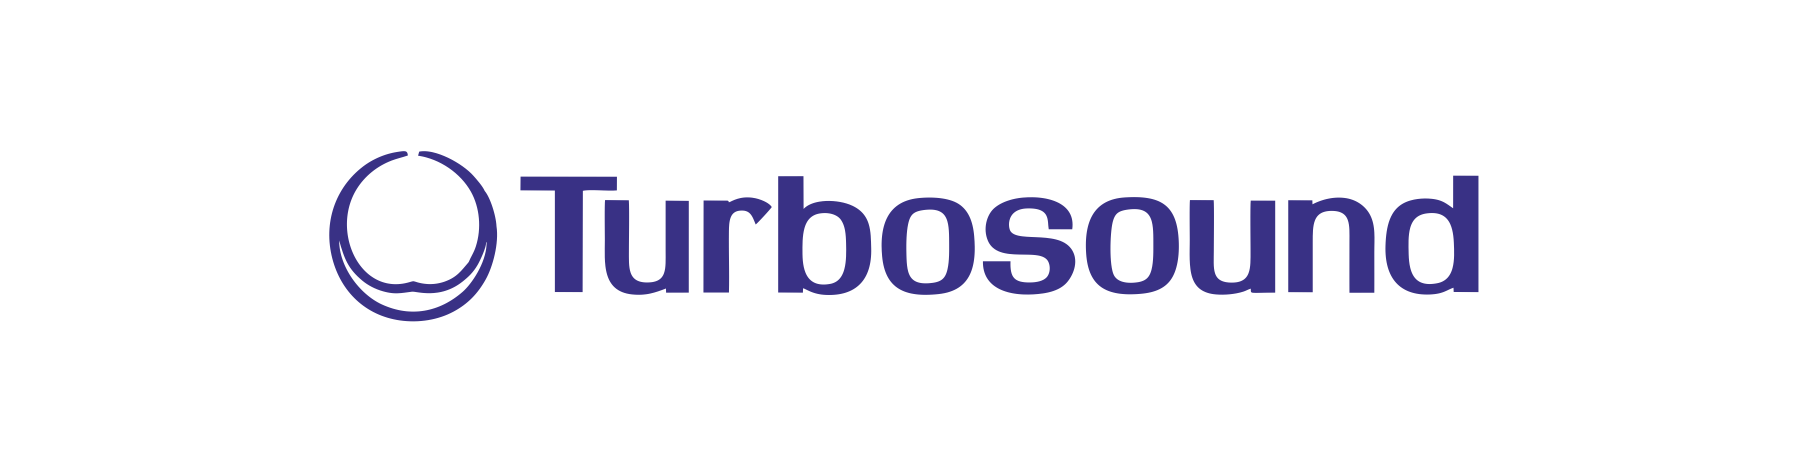 turbo speaker brand logos traced